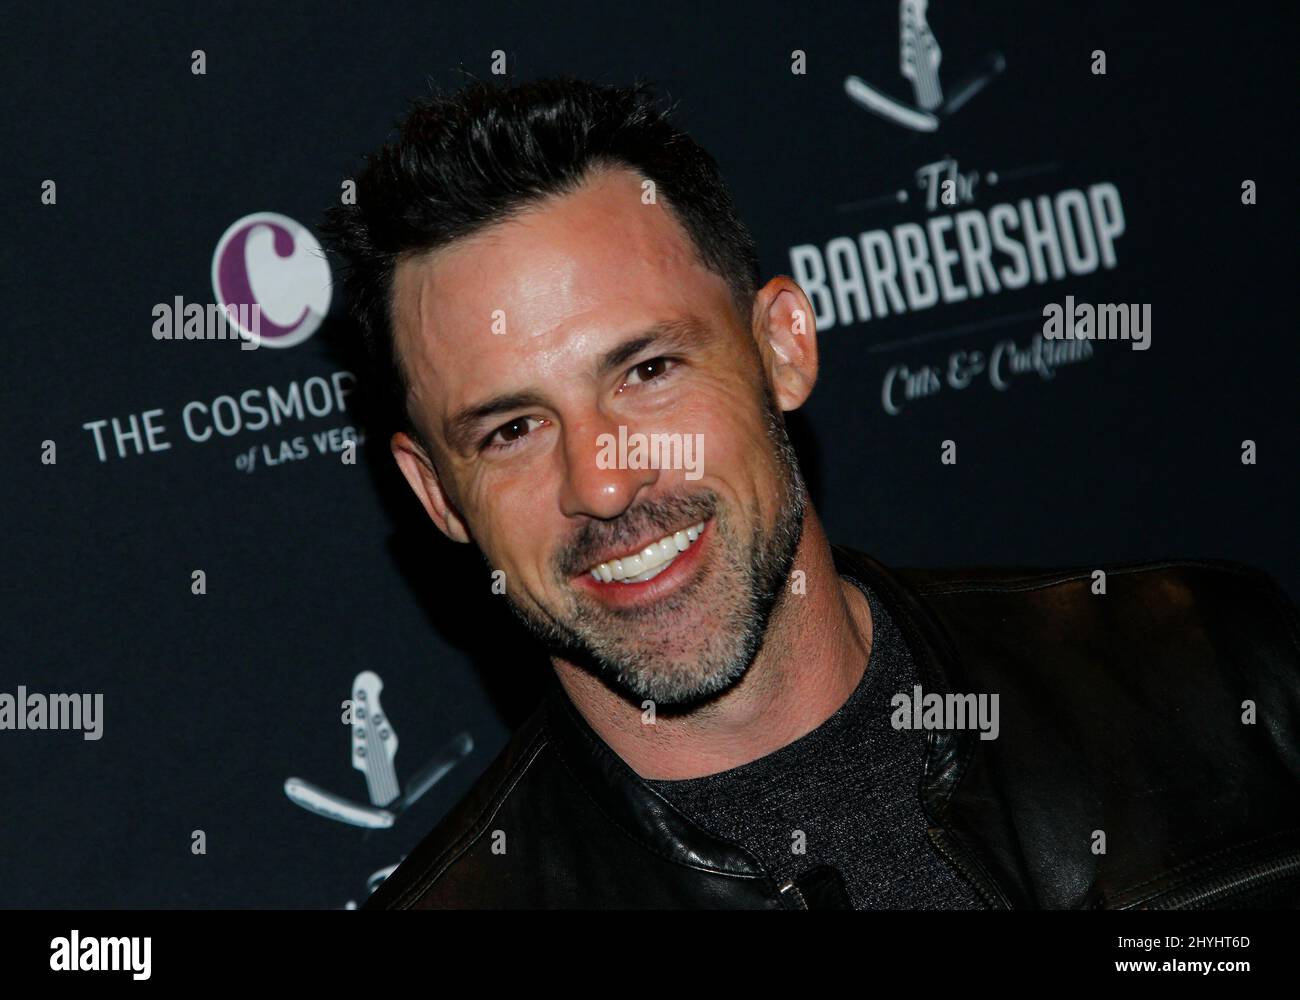 Philip Boyd al grande fine settimana di apertura del Barbershop tagli & cocktail nel Cosmopolitan il 16 marzo 2019 a Las Vegas. Foto Stock